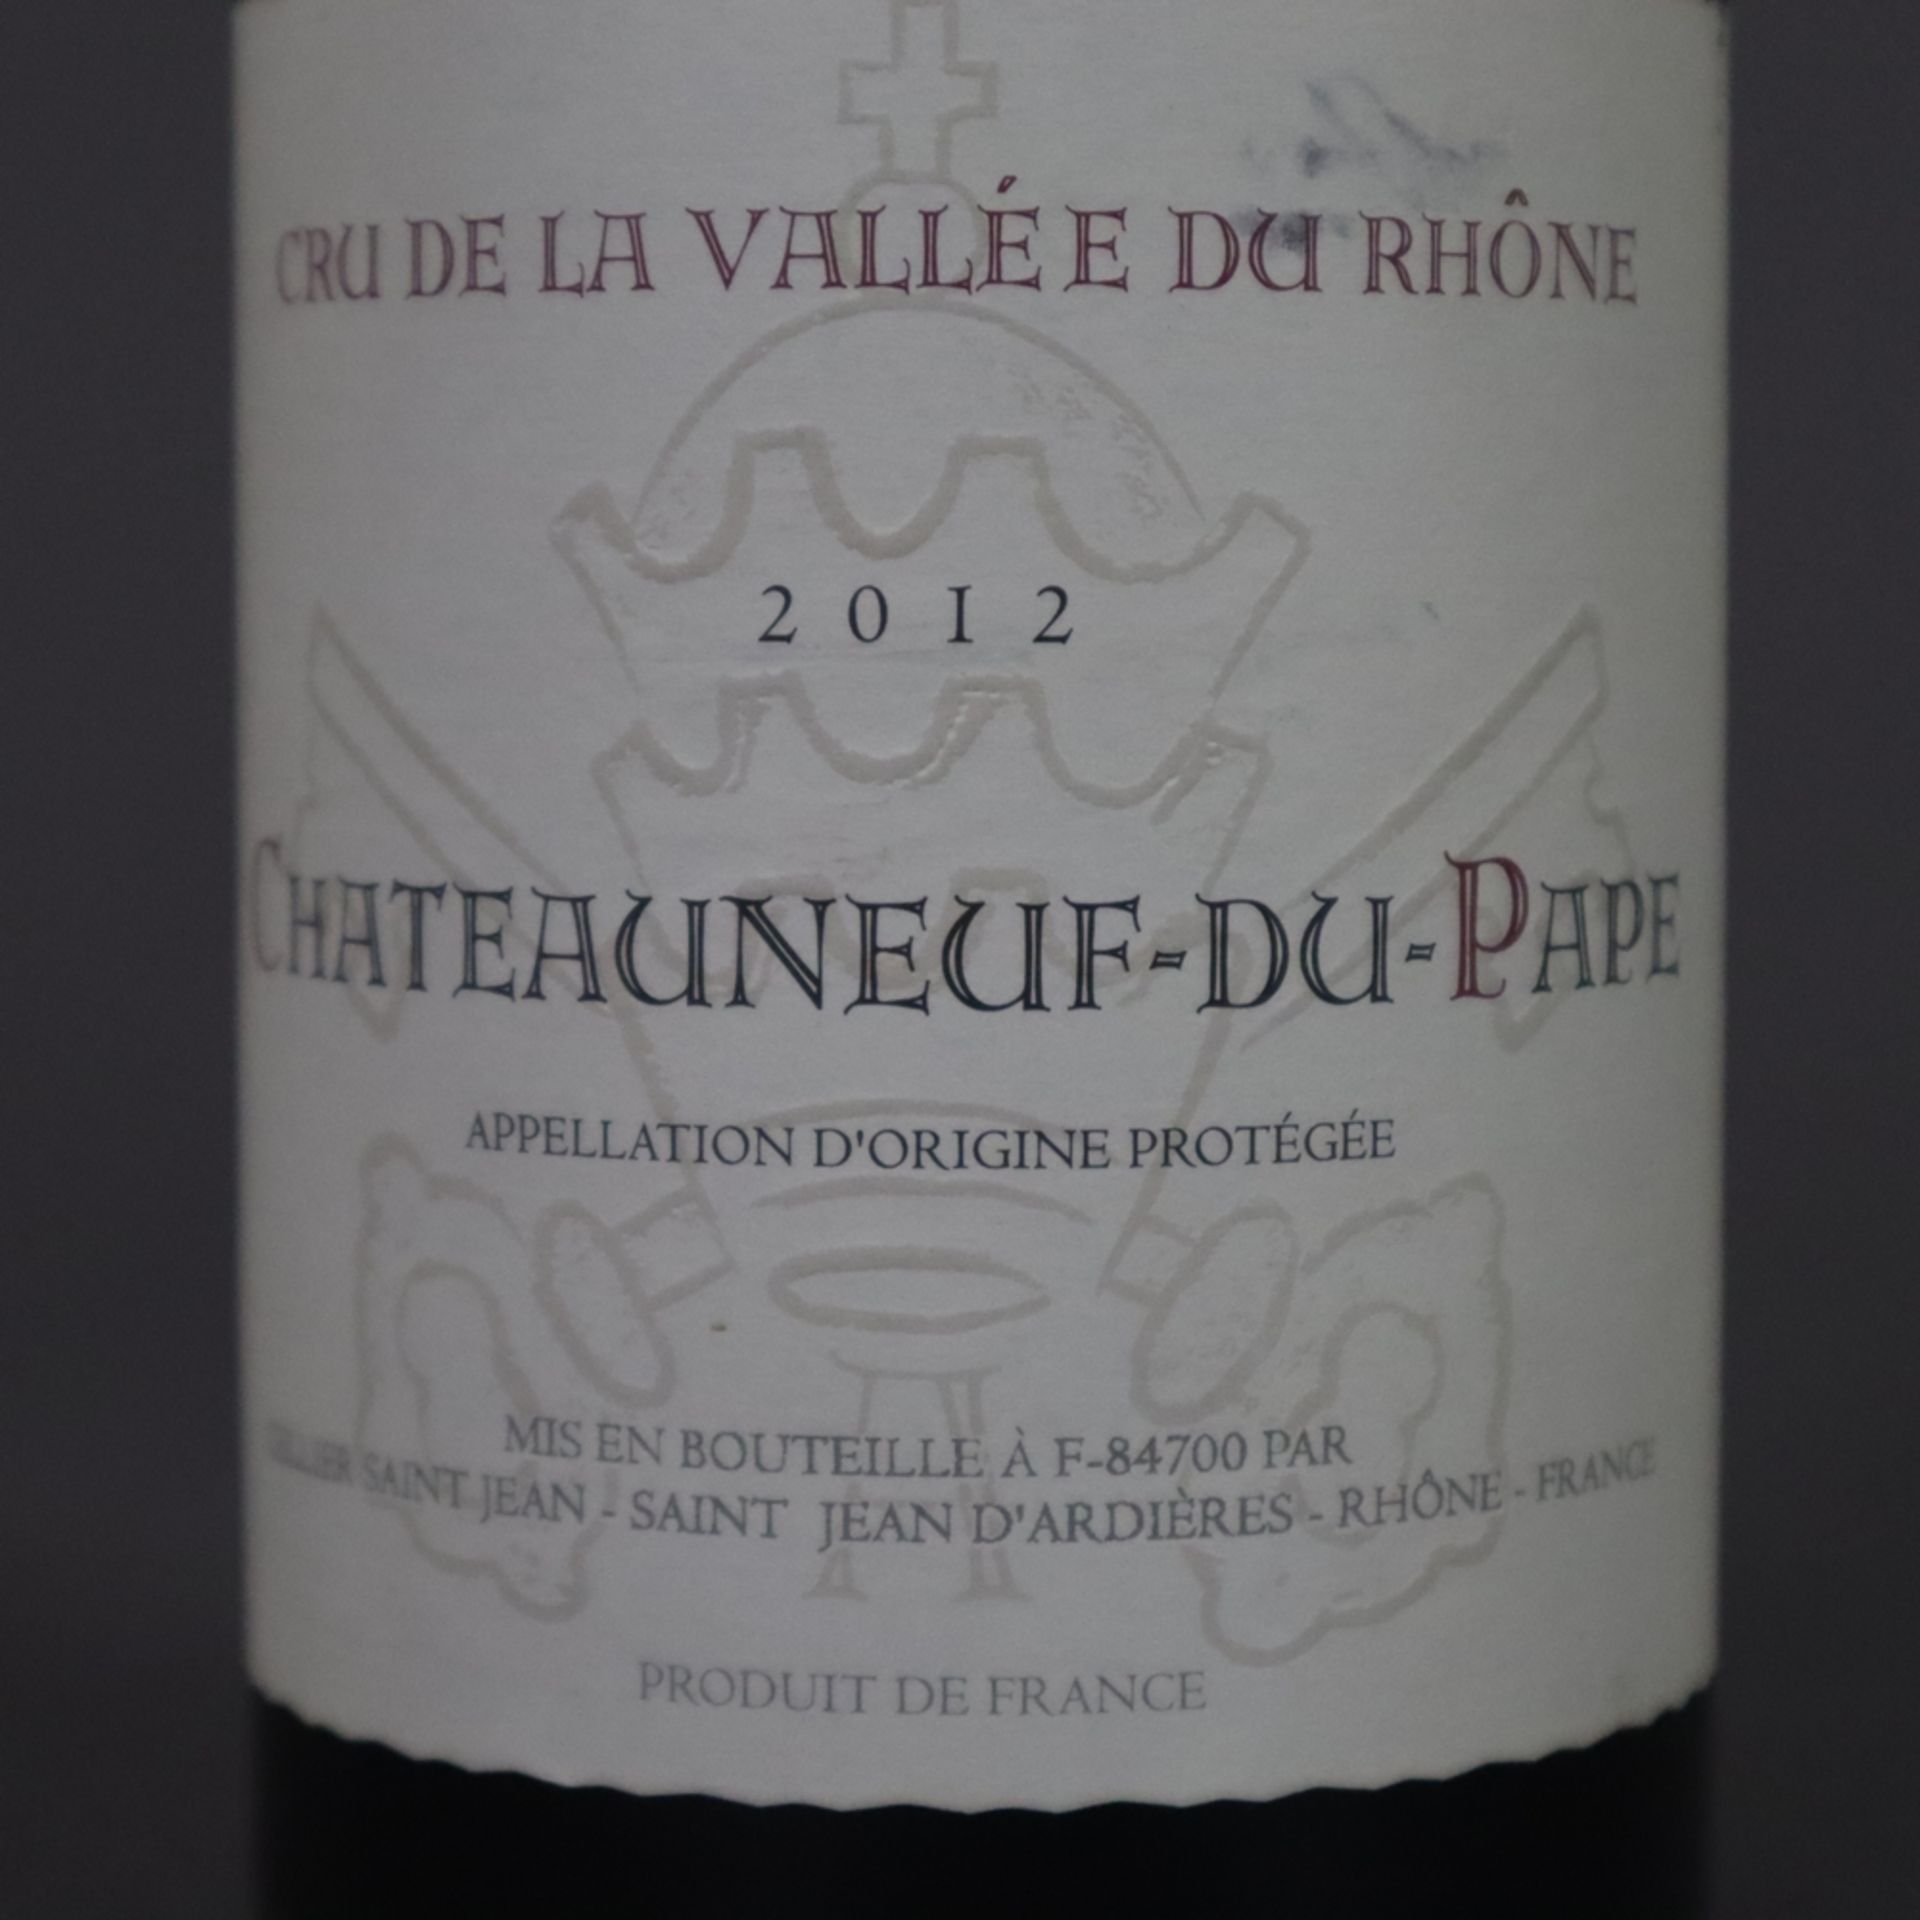 Wein - 2012 Cru de la Vallée du Rhône Châteauneuf-du-Pape Rhône, France, 75 cl, 14% - Image 5 of 6